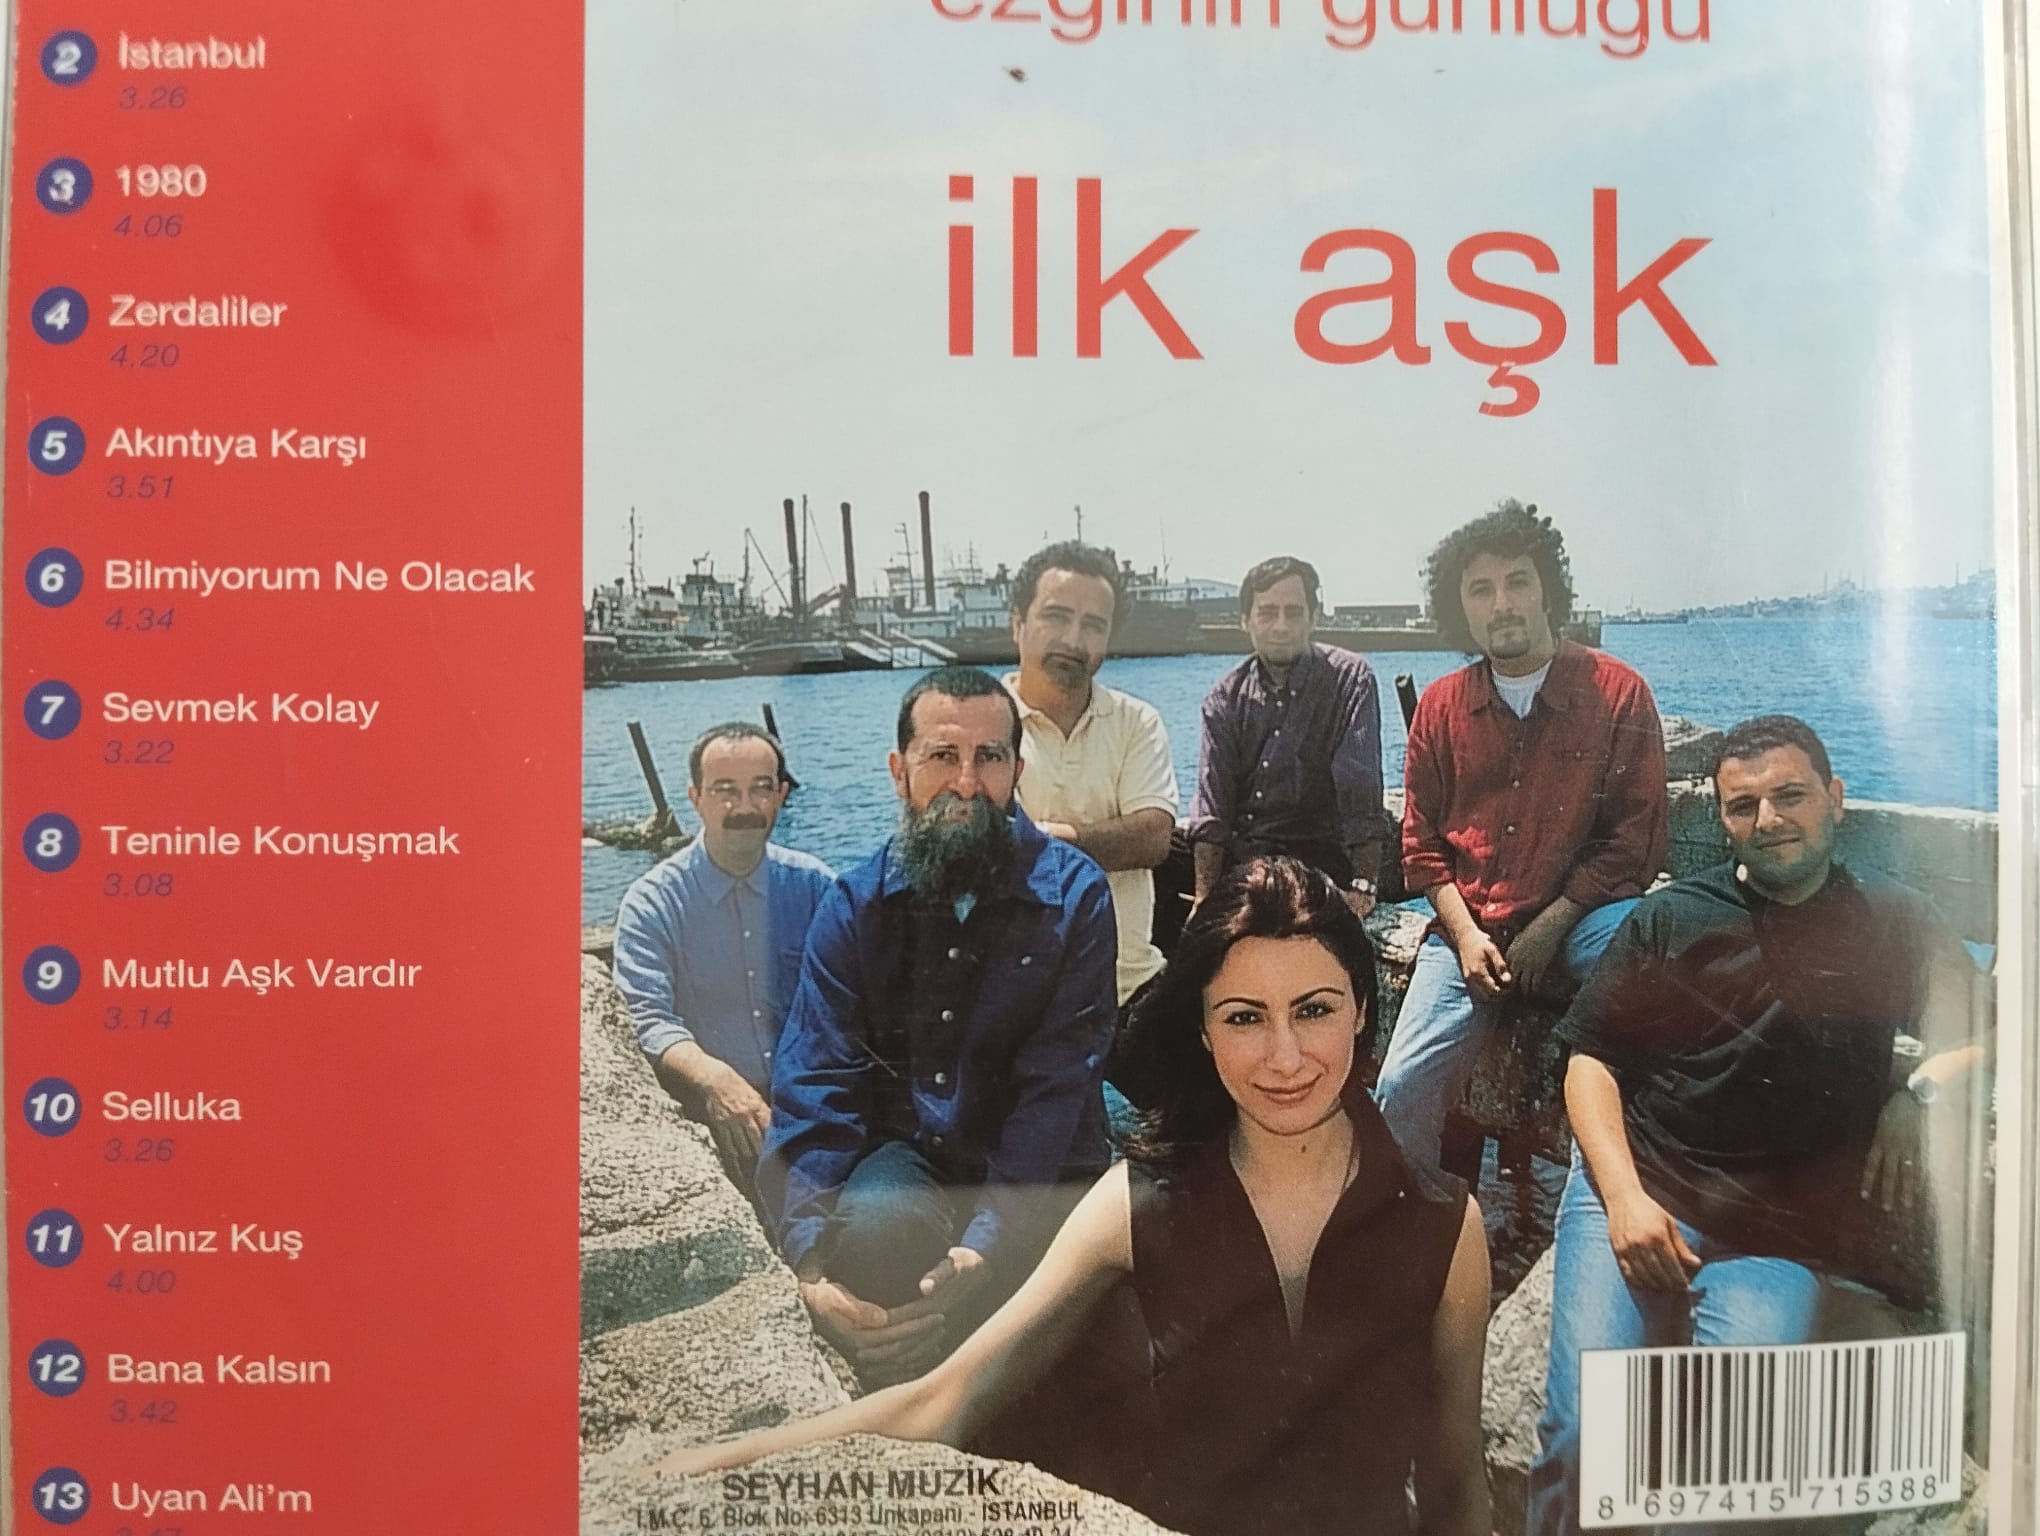 Ezginin Günlüğü ‎– İlk Aşk -  2003 Türkiye  Basım  2. El  CD Albüm